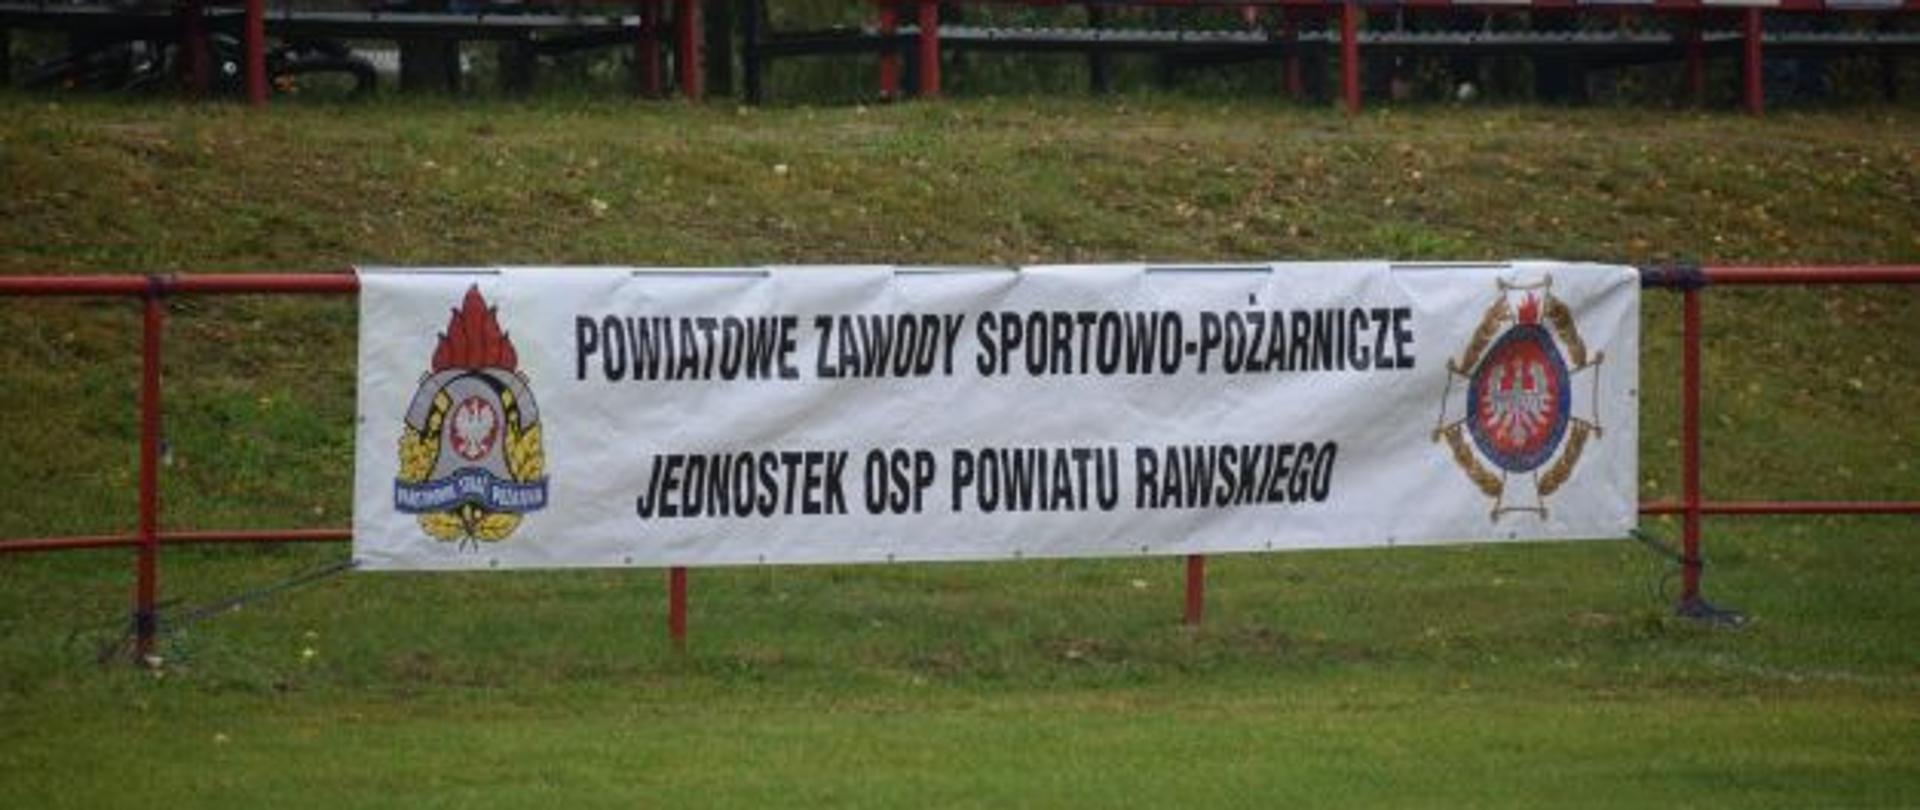 Na ogrodzeniu wisi biały baner z napisem Powiatowe Zawody Sportowo - Pożarnicze Jednostek OSP Powiatu Rawskiego. Z tyłu widać dwa rzędy kolorowych krzesełek trybun boiska.